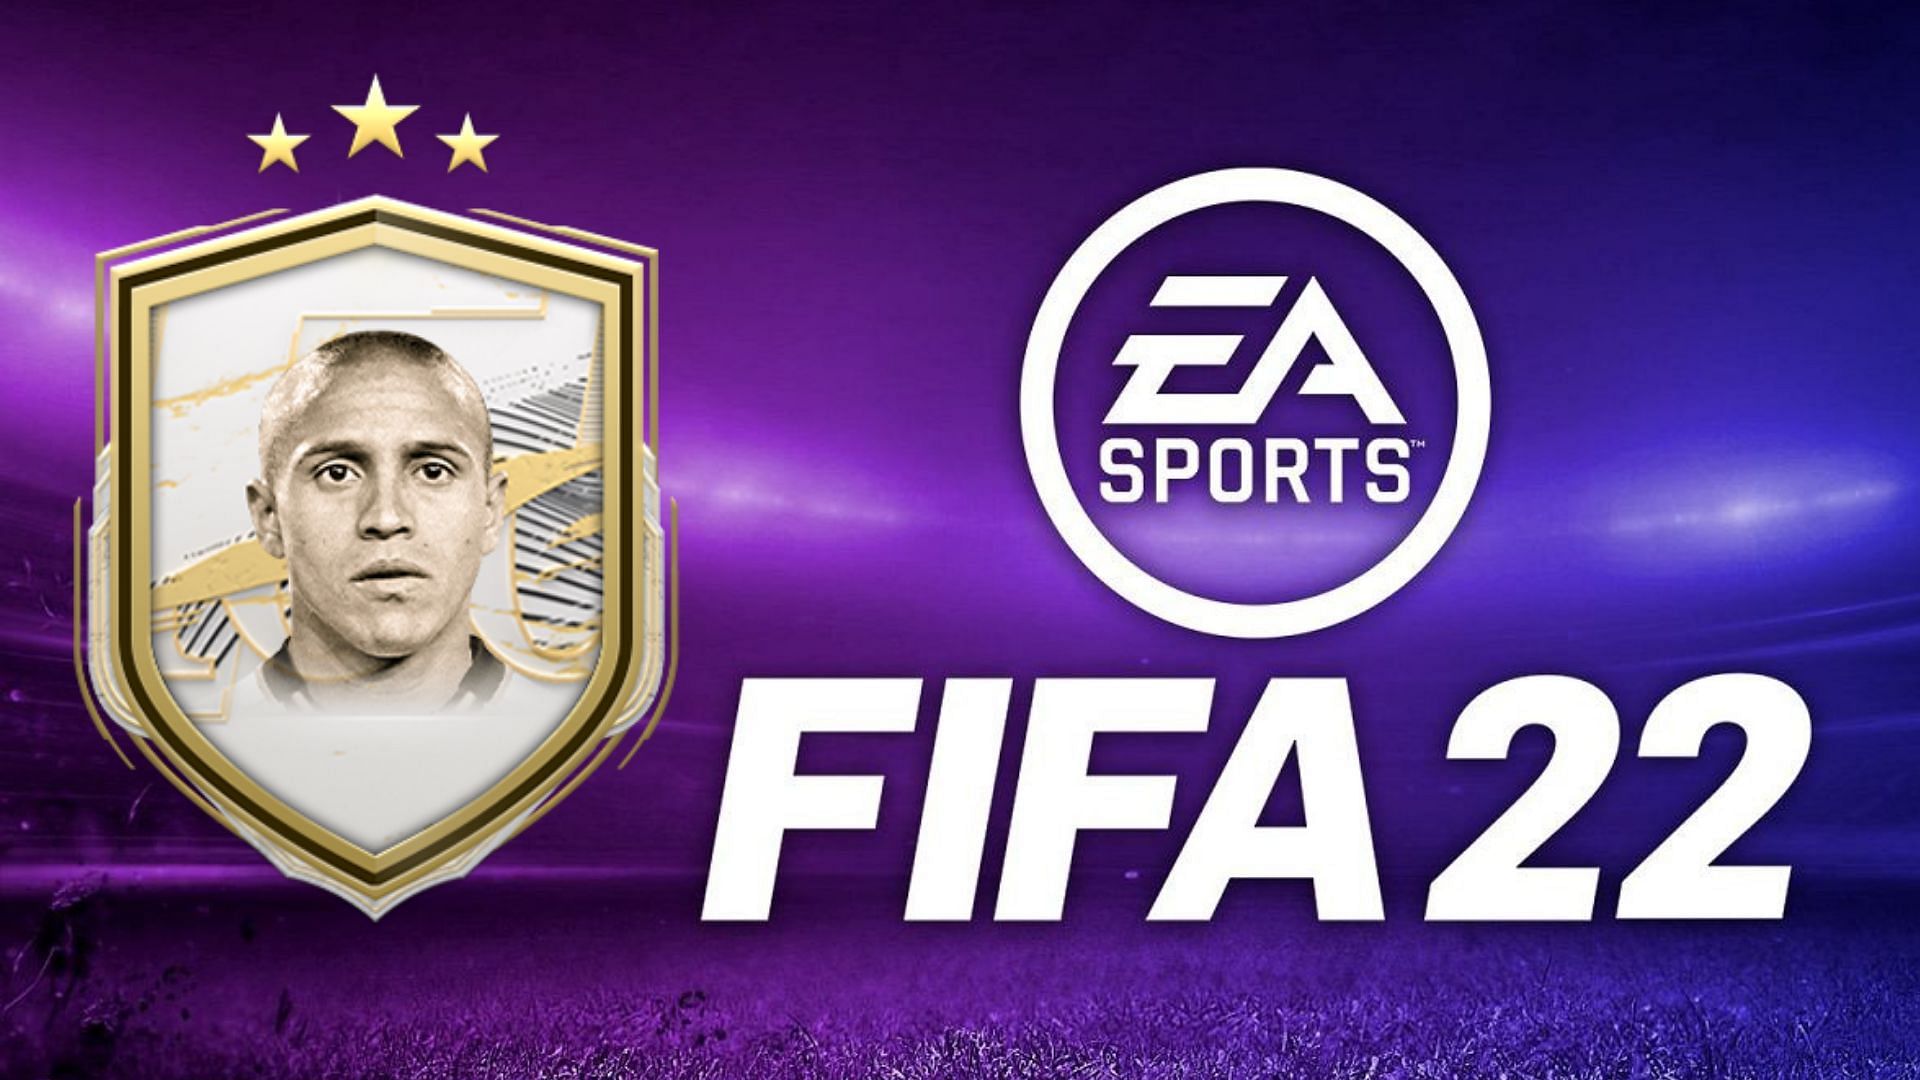 Roberto Carlos mid icon SBC is live in FIFA 22 (Image via Sportskeeda)